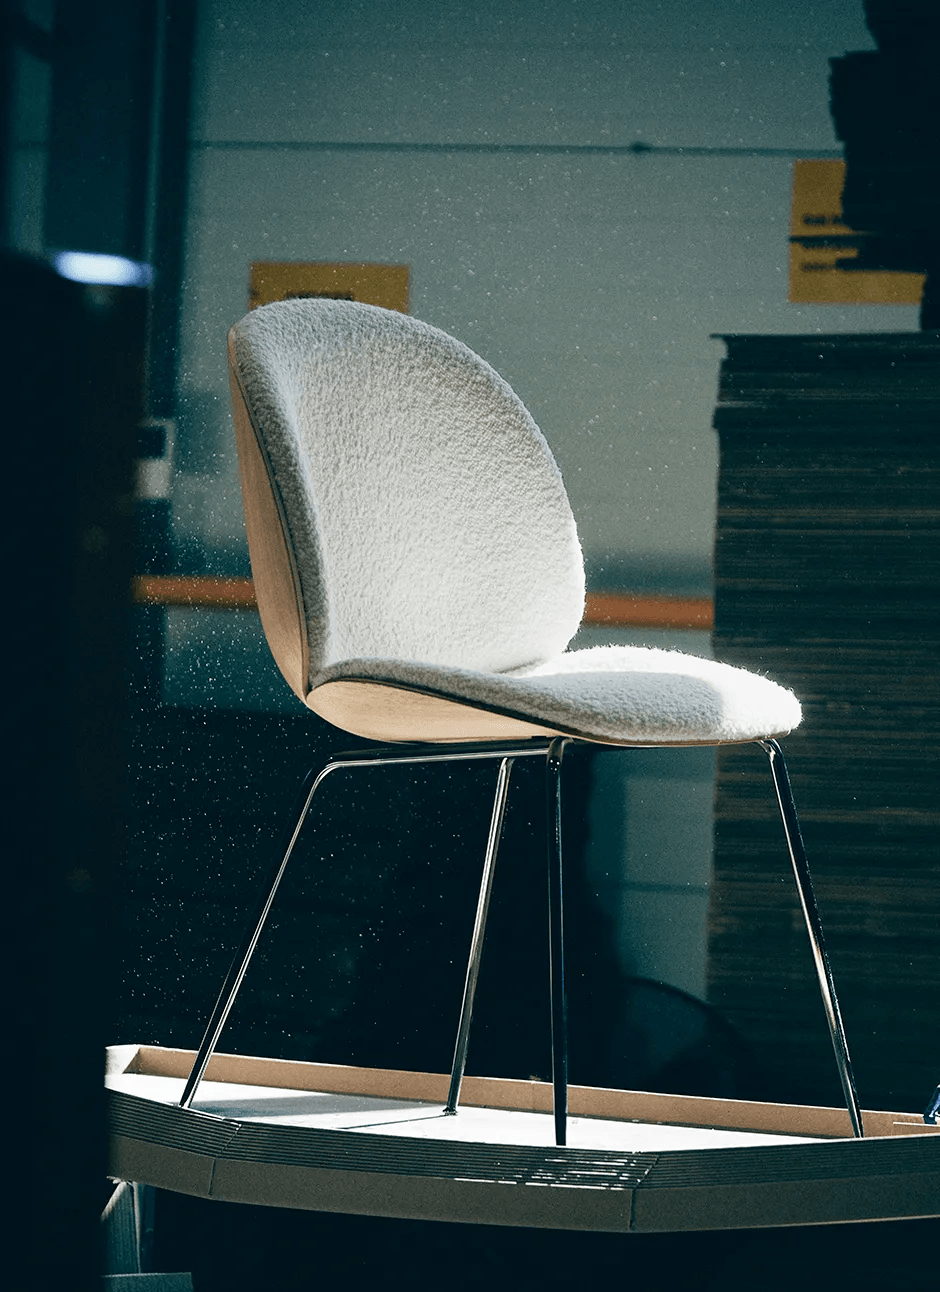 Dining table chair BEETLE - 3D veneer